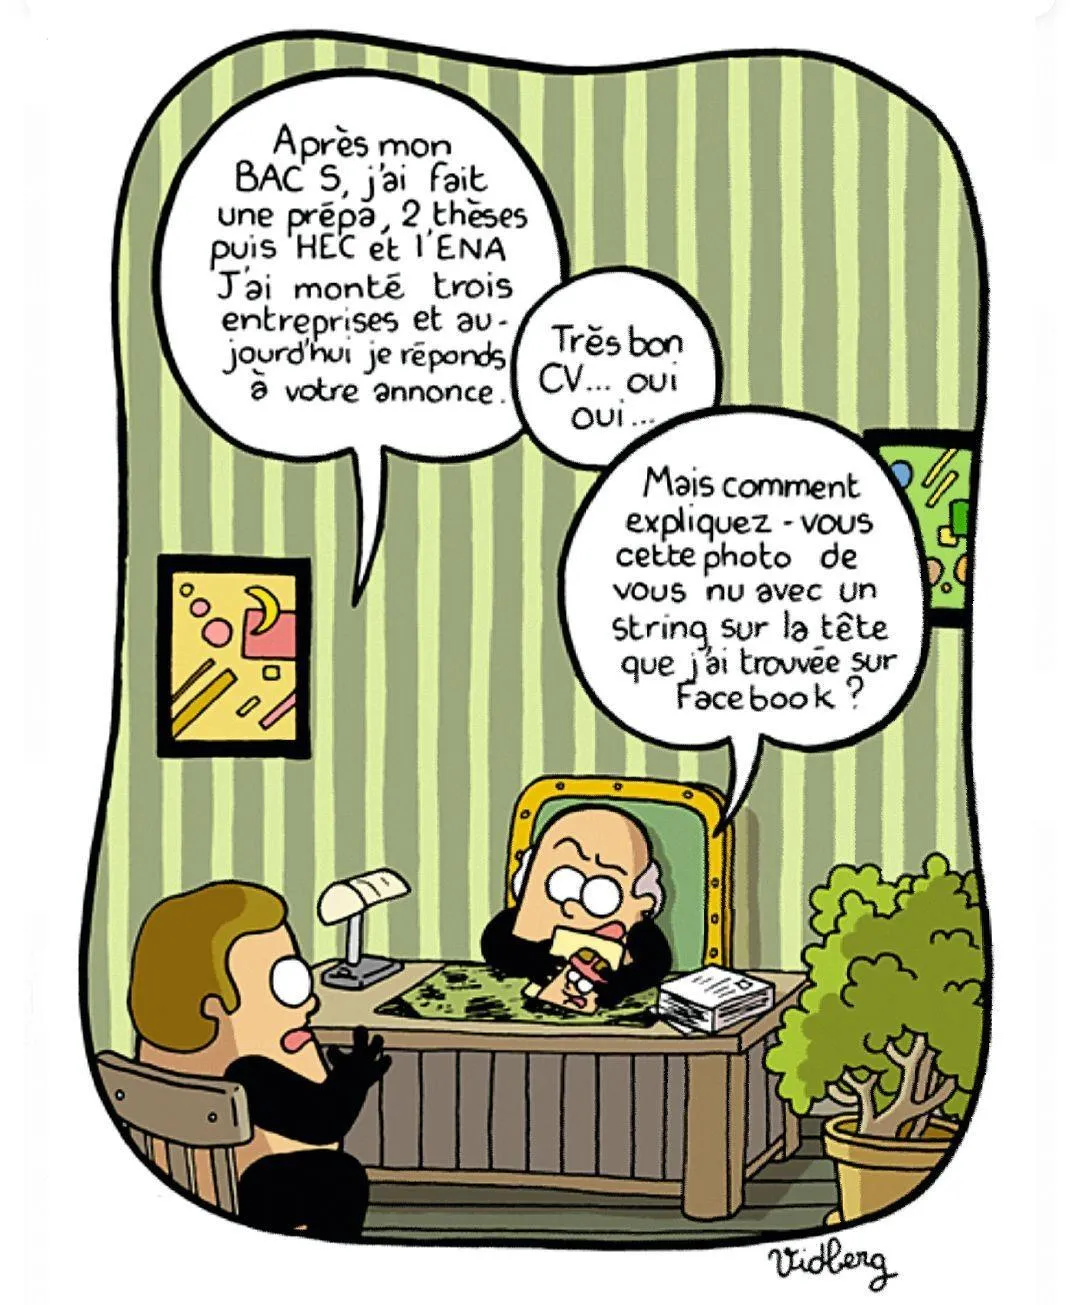 Martin Vidberg, « Faut-il s'inscrire sur Facebook ? », dessin
sur LeMonde.fr, 20 février 2009.